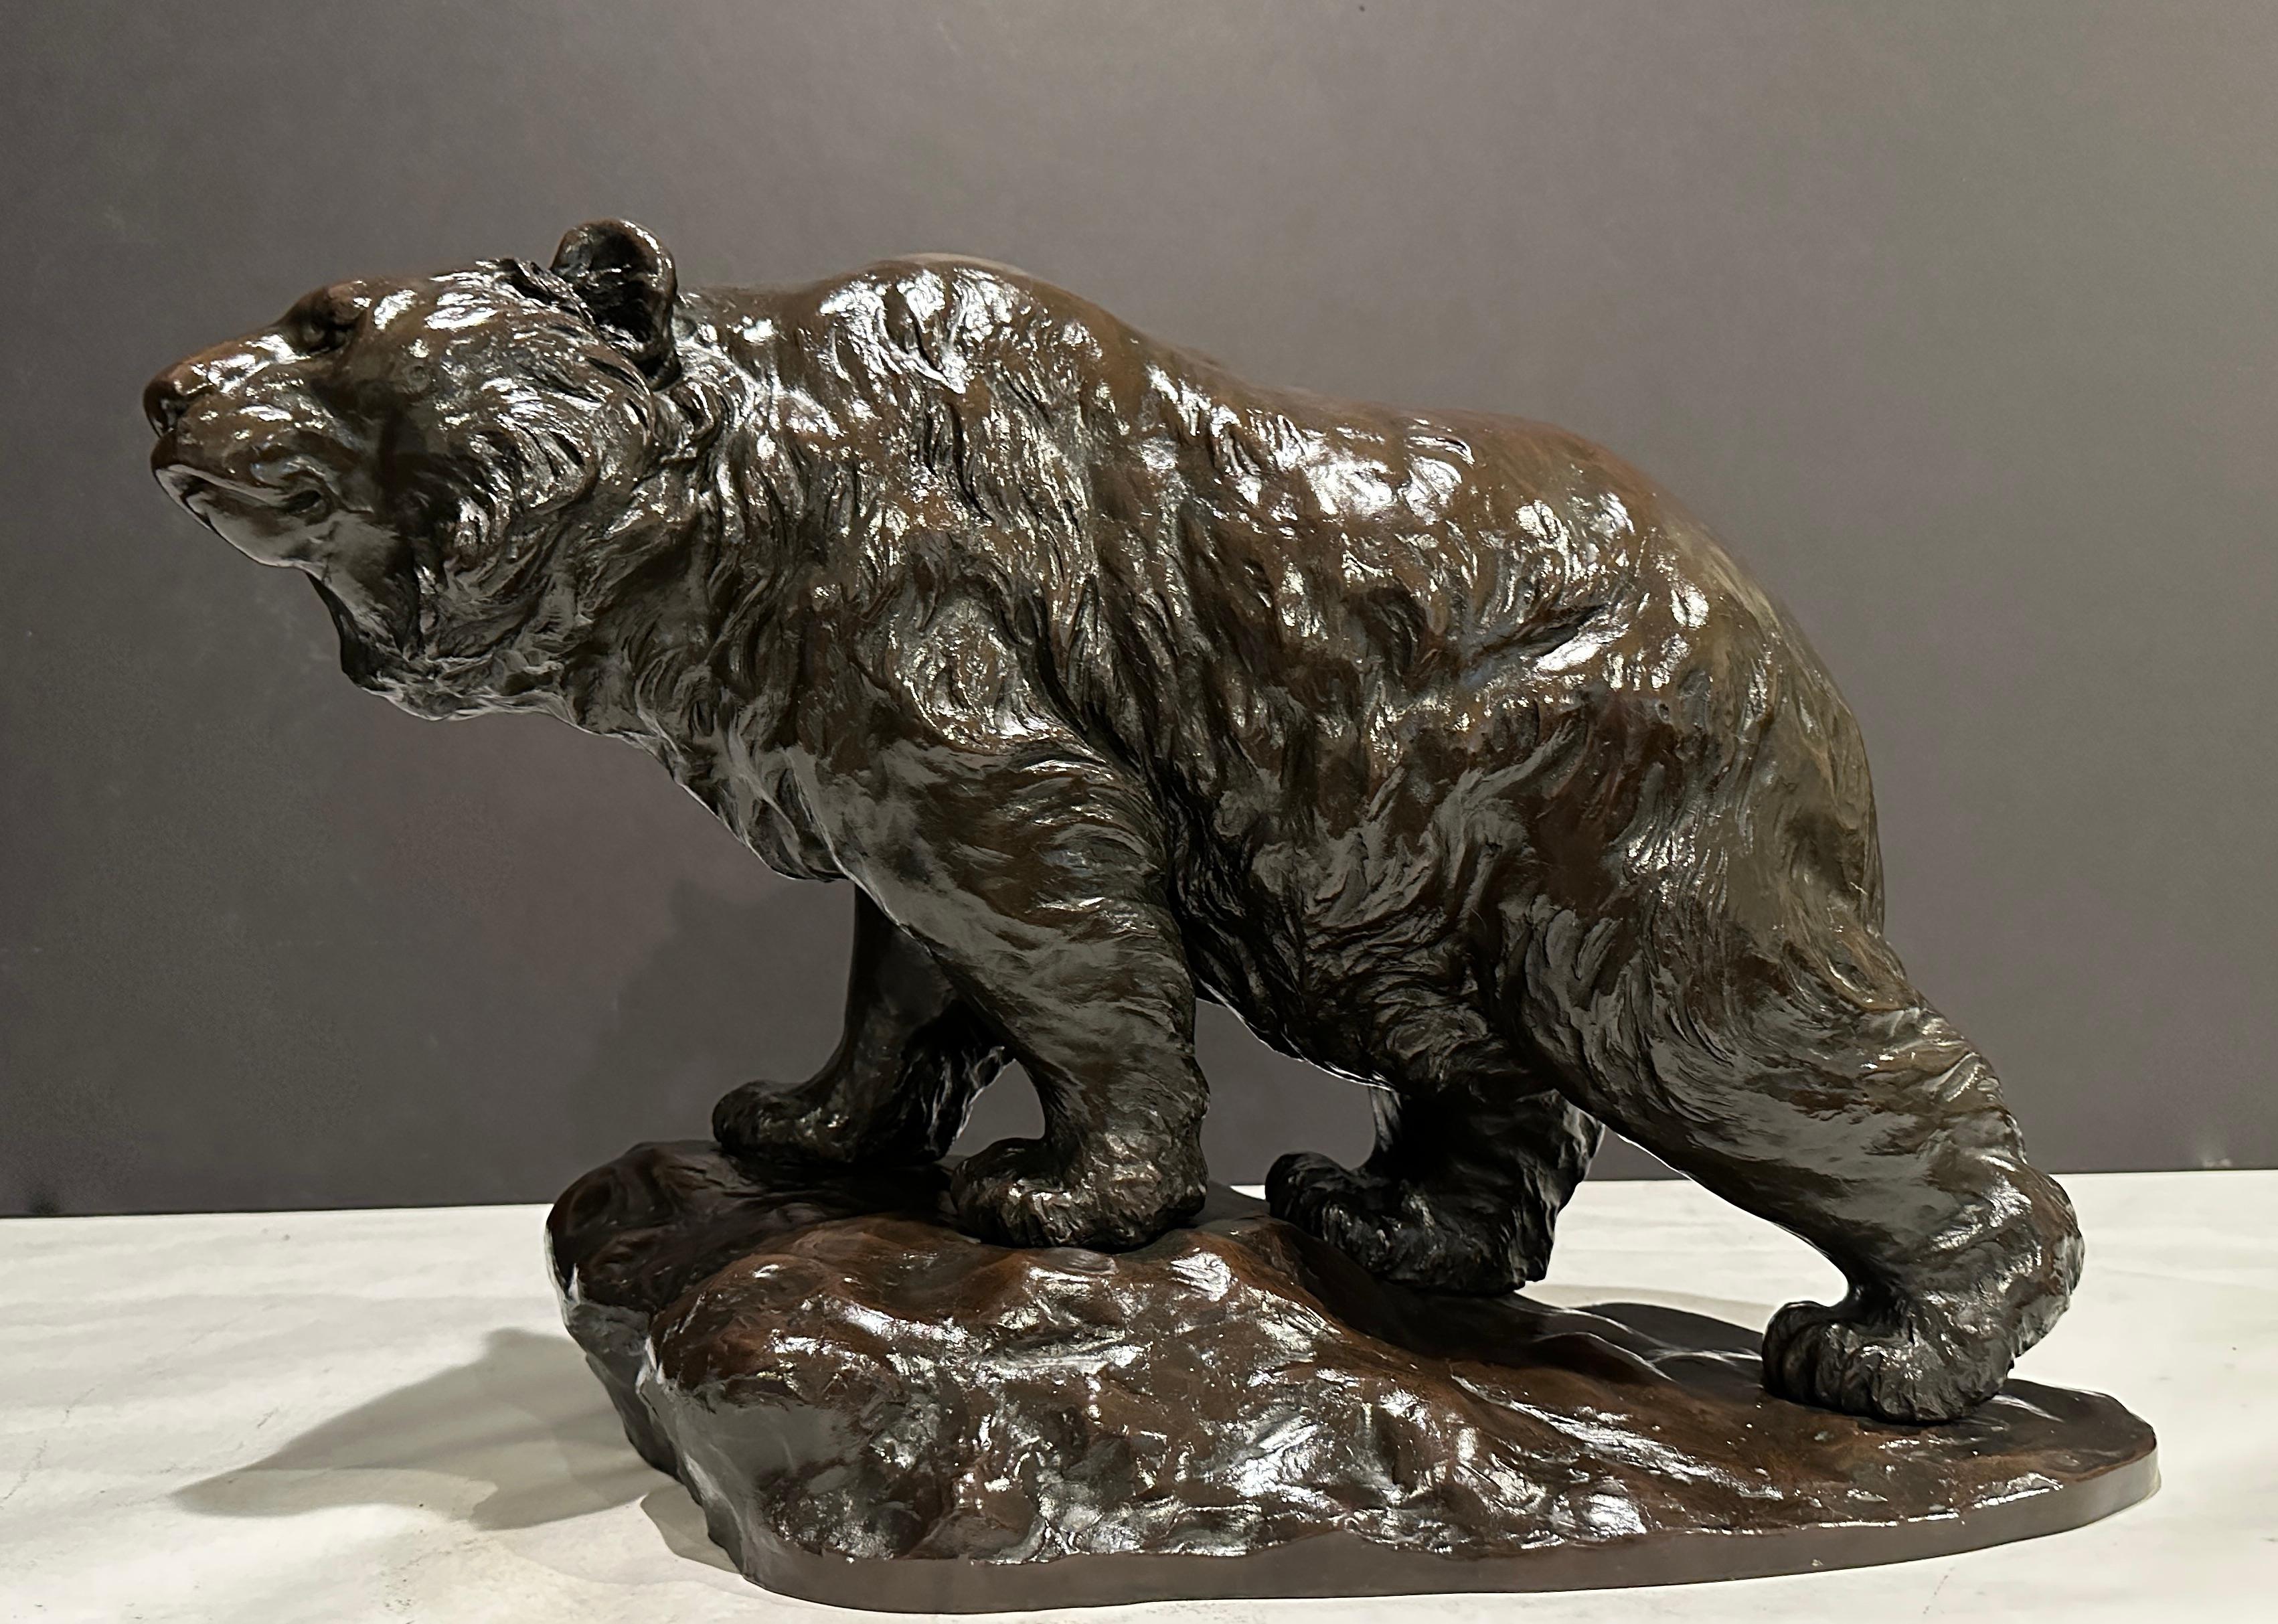 Grande et impressionnante sculpture en bronze patiné représentant un ours. Dans le cadre de notre collection d'œuvres d'art japonaises, nous sommes ravis de proposer ce magnifique Okimono de haute qualité de la période Meiji représentant un Ours à